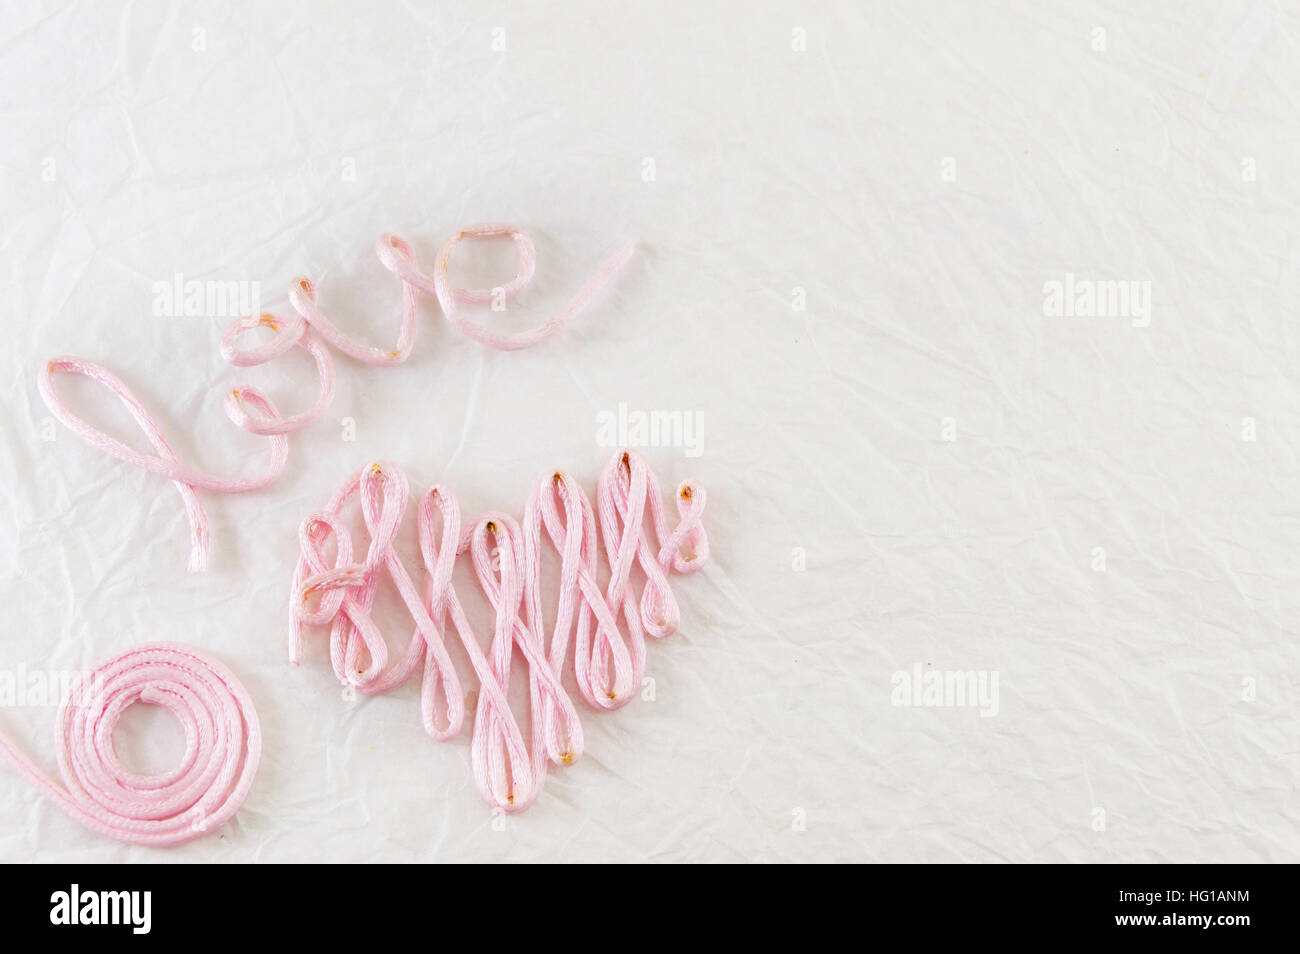 Wort-Liebe gemacht aus rosa Nähgarn Stockfoto